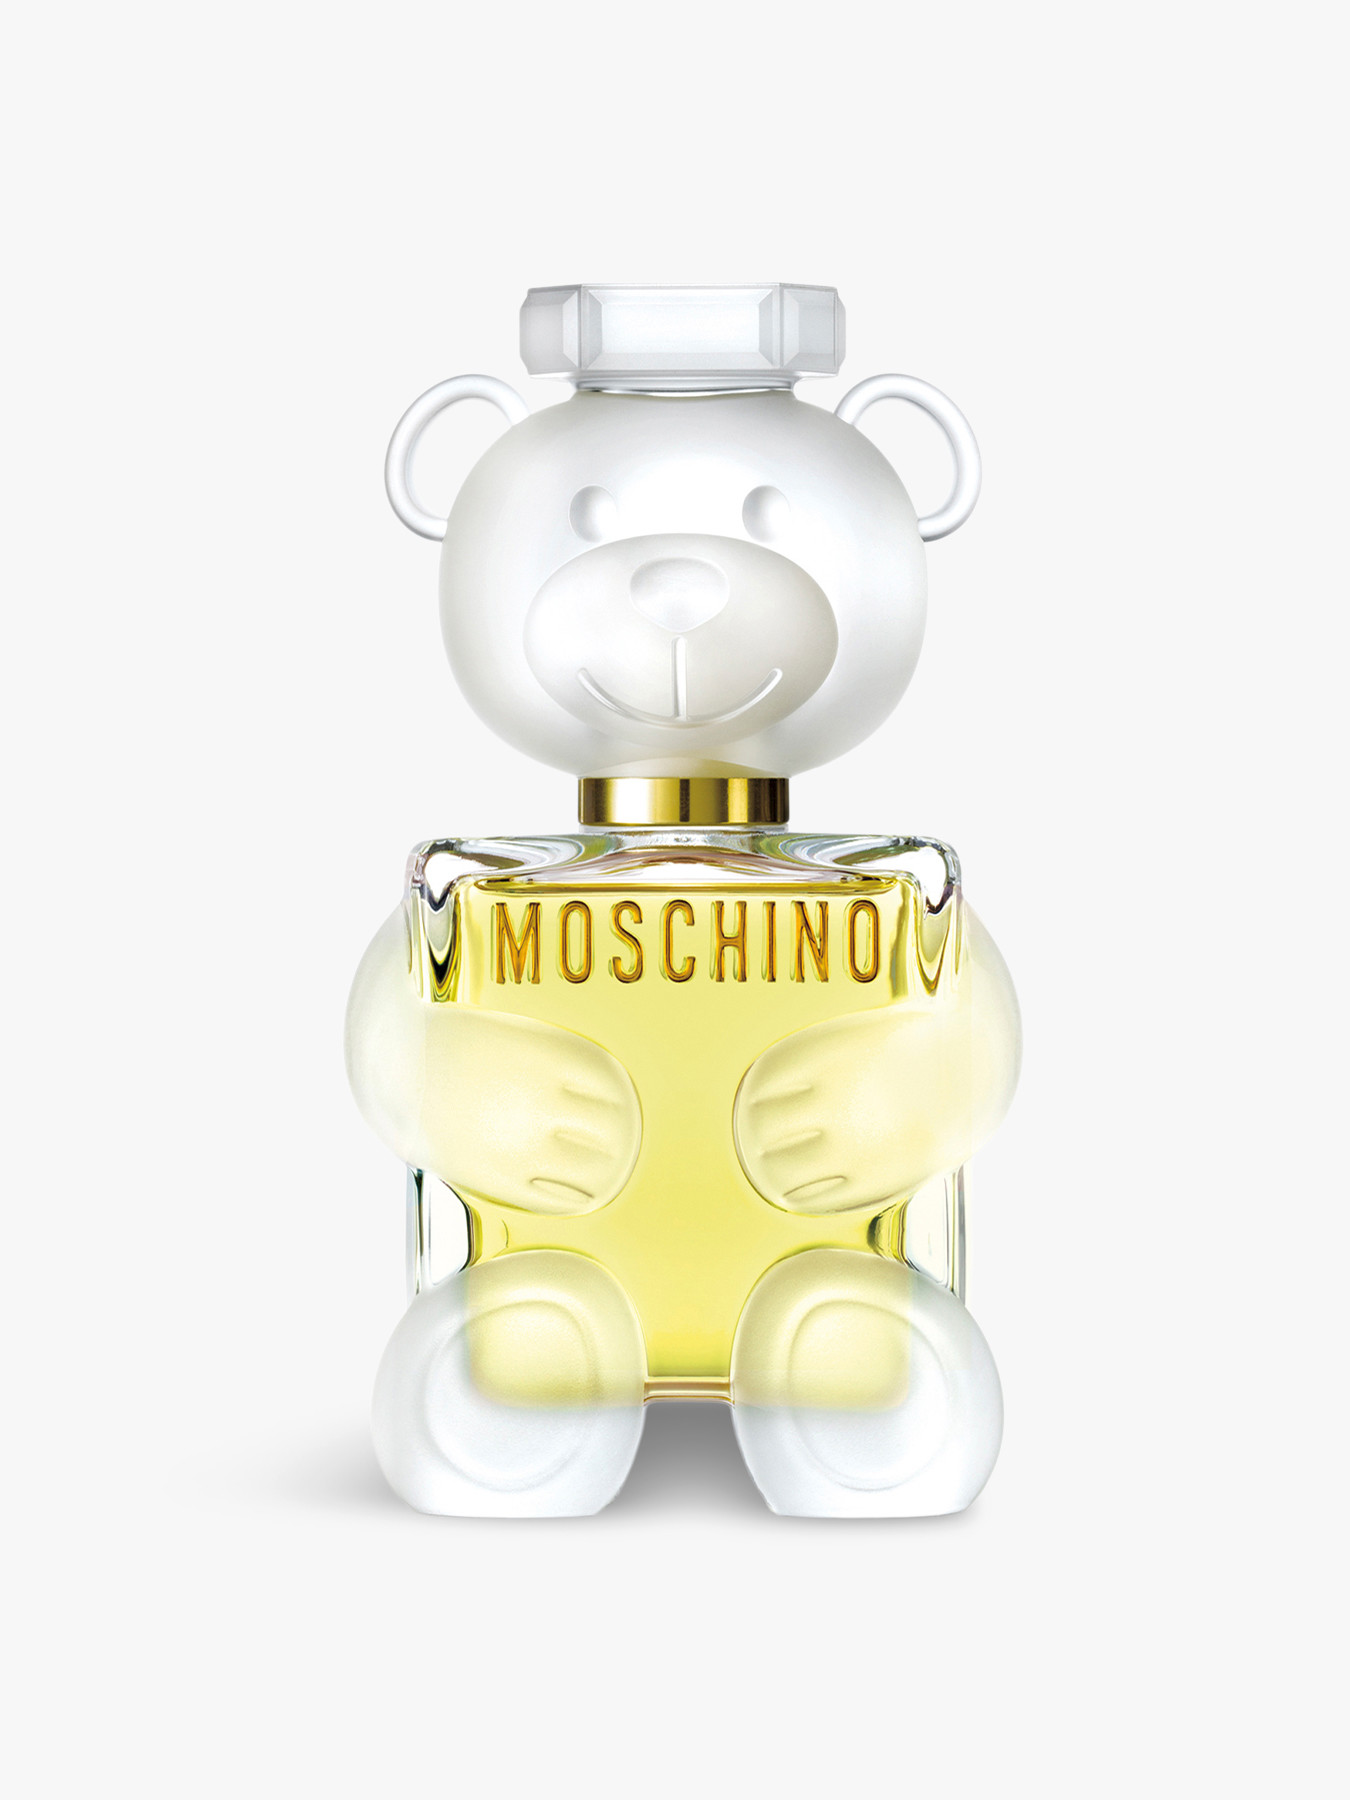 Moschino Toy2 Eau De Parfum 100ml